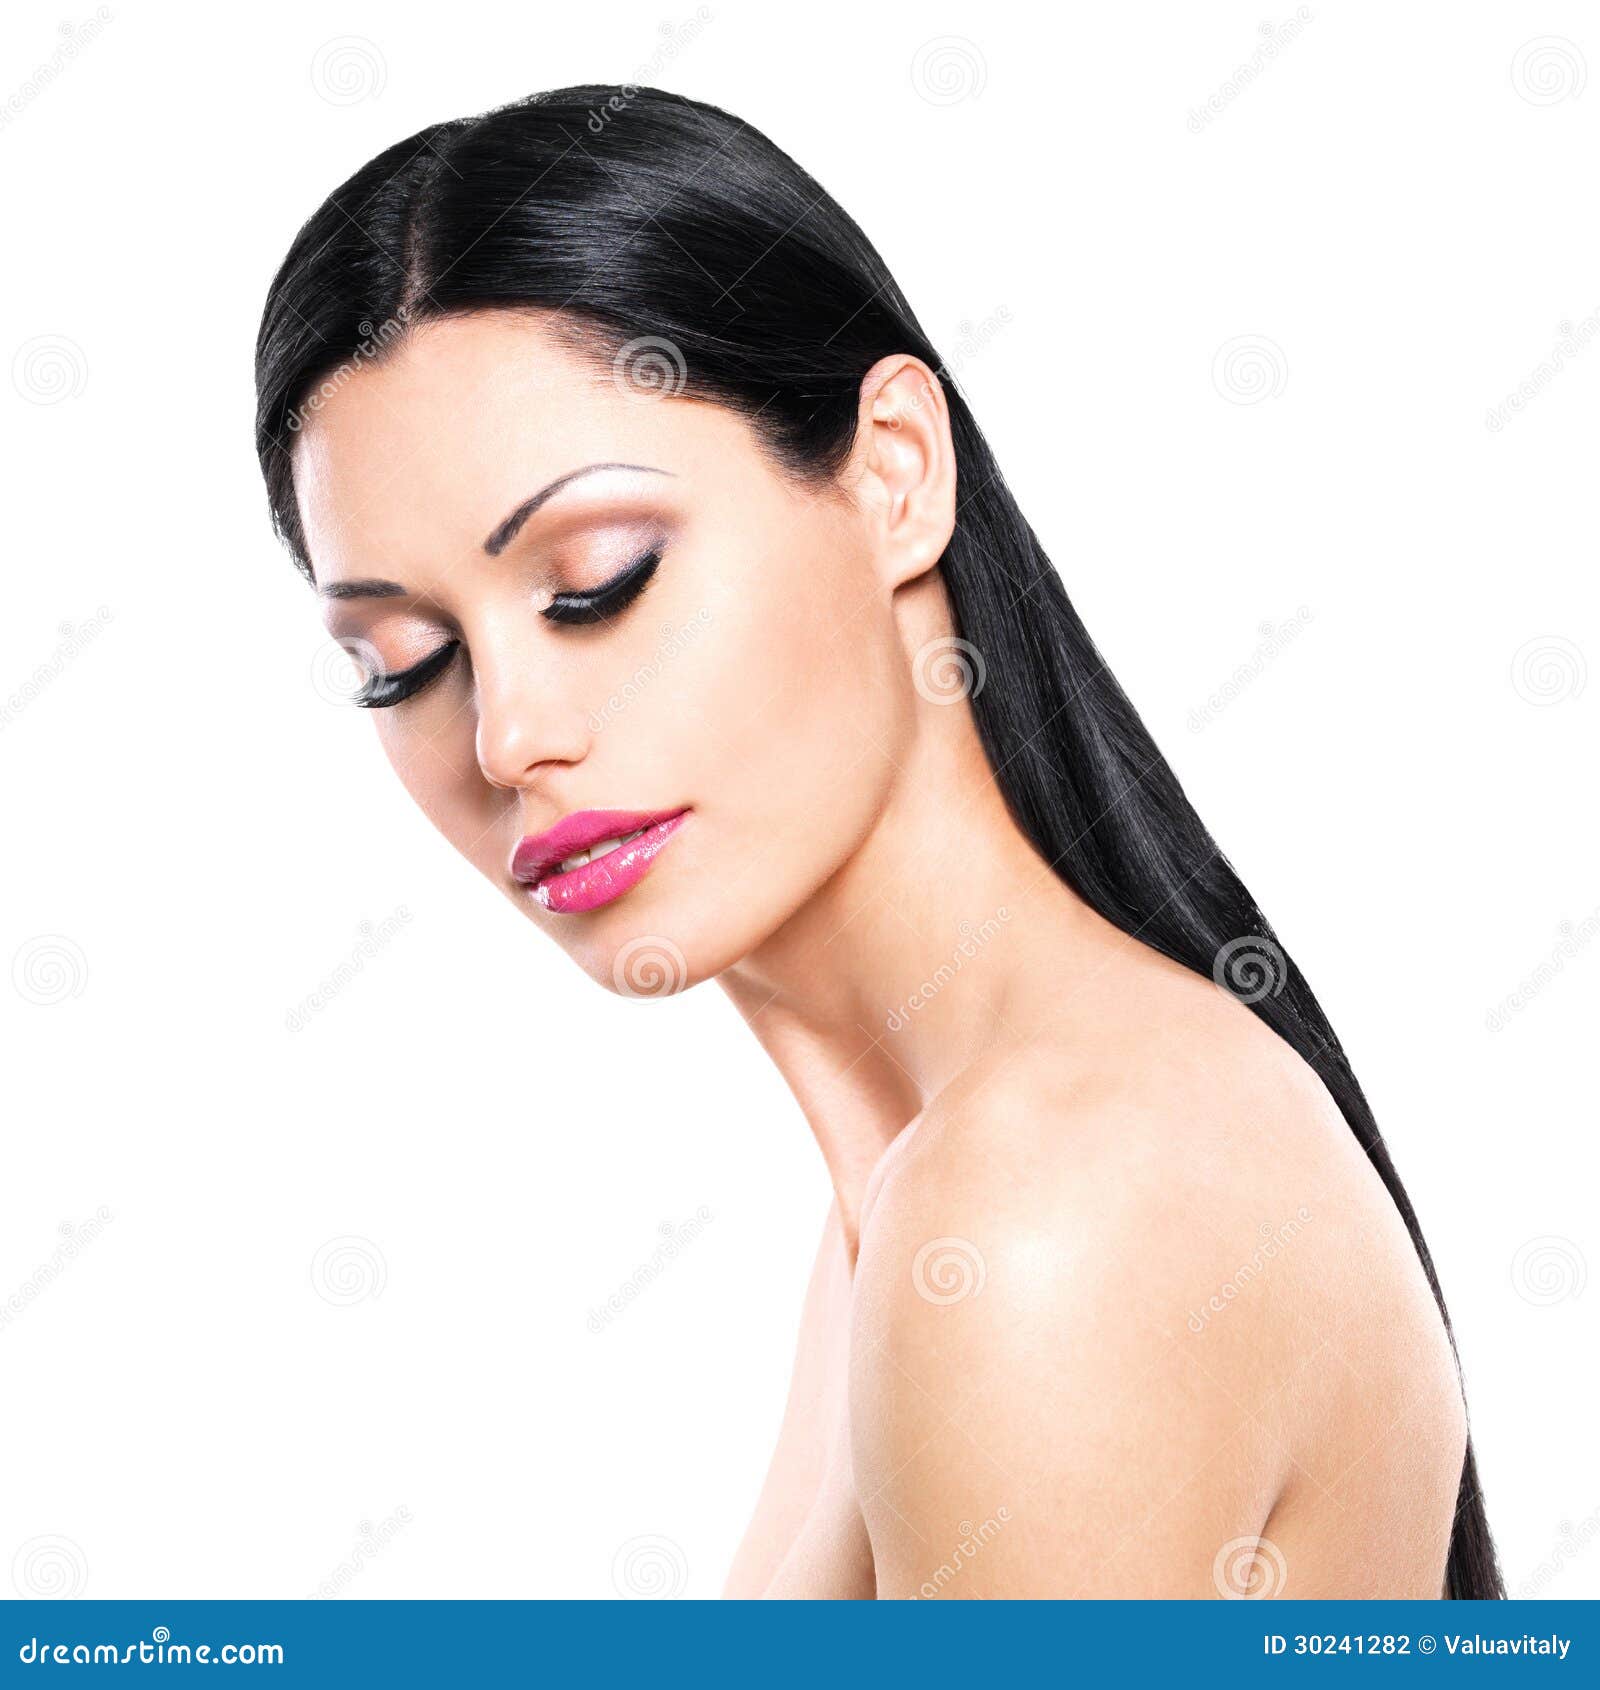 Mooie vrouwenzorgen van het huidgezicht dat op witte achtergrond wordt geïsoleerd. Het portret van de schoonheid van de mooie vrouw met gesloten ogen